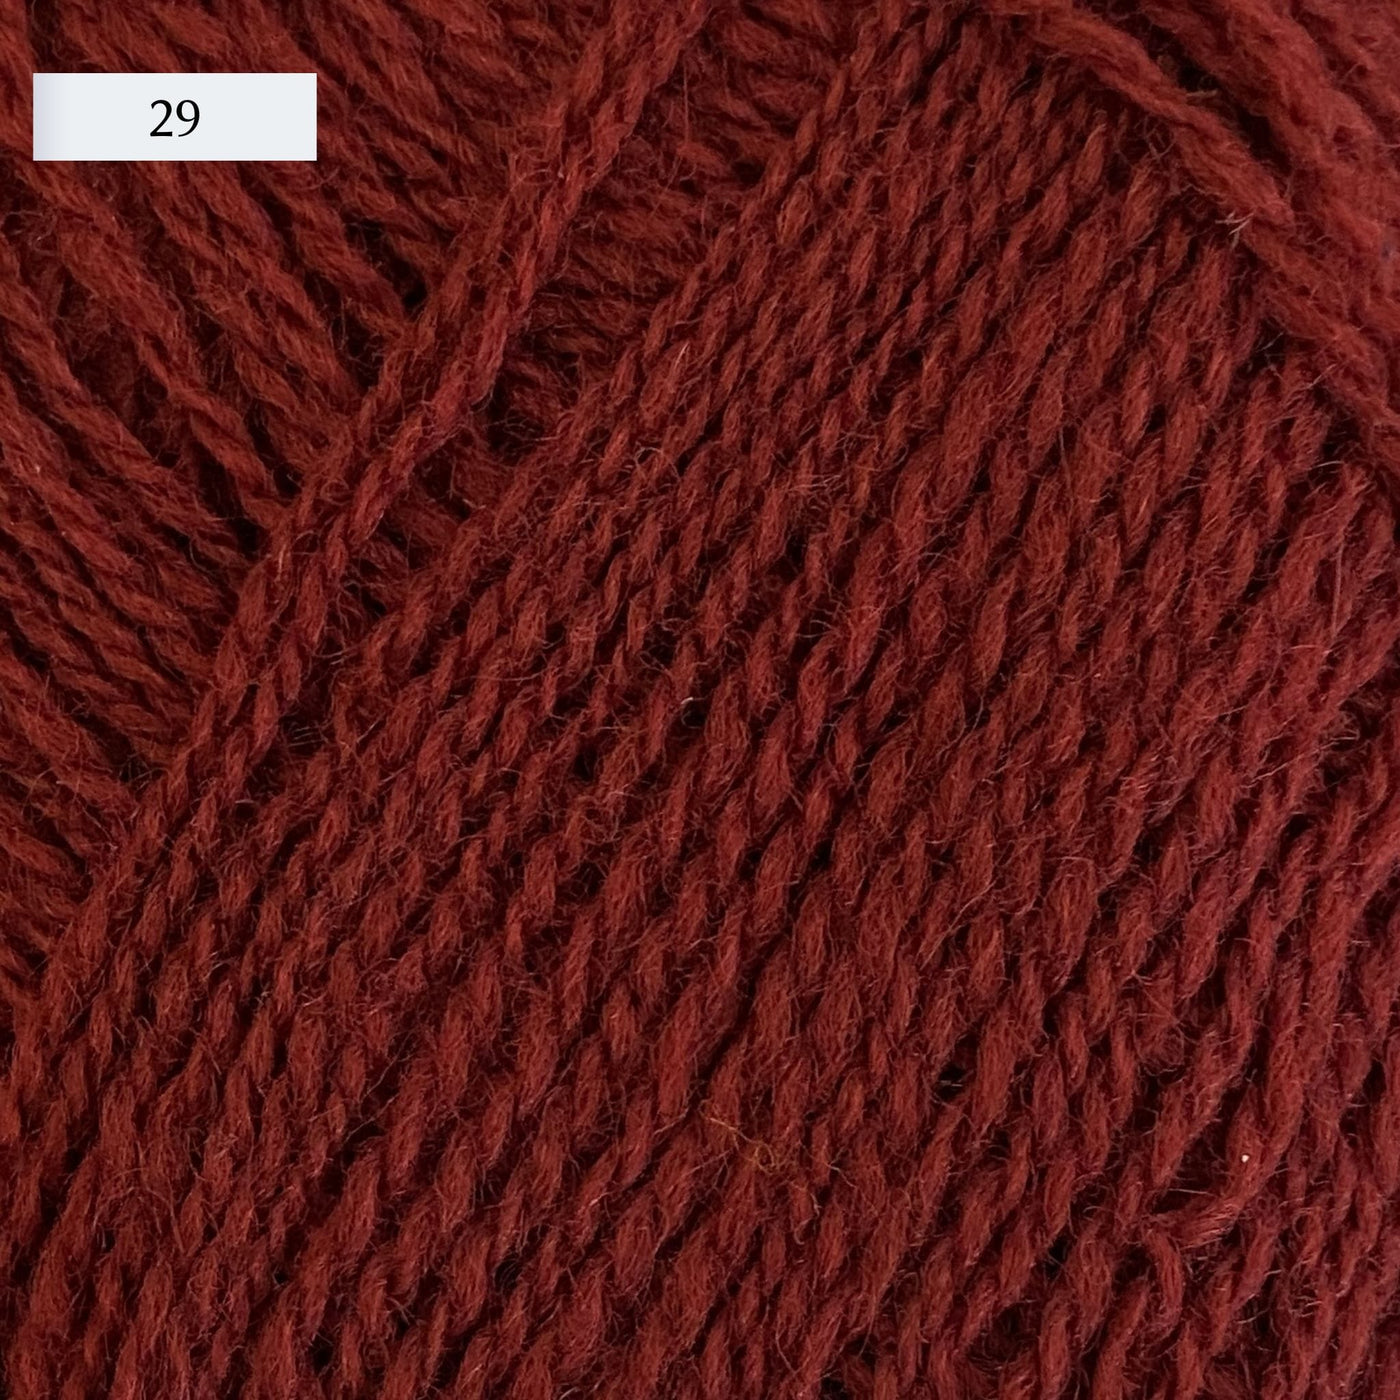 Rauma Lamullgarn, a fingering weight yarn, in color 29, a medium brick red